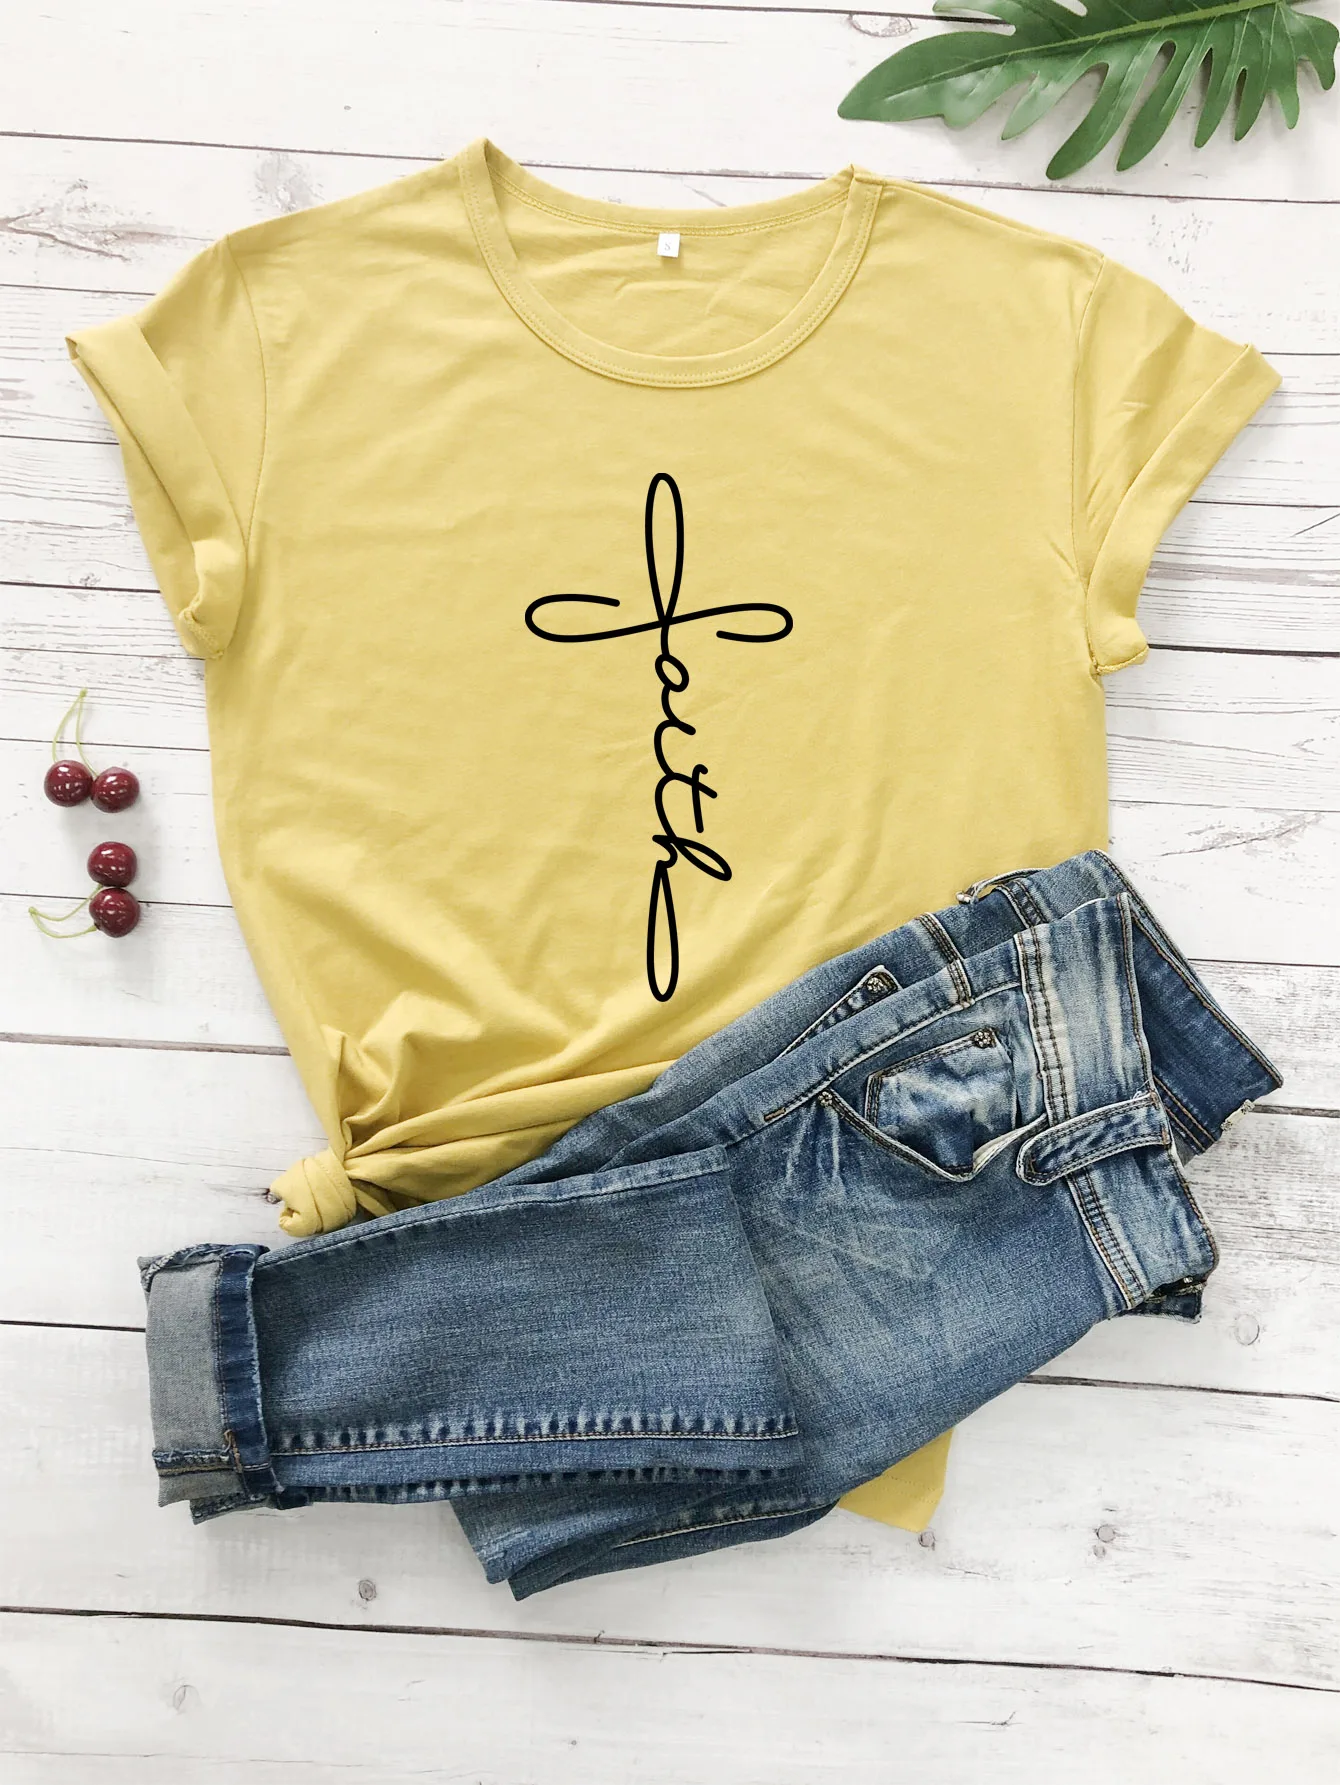 Крест вера футболка для христианина Hipster Религия церковь Иисус футболка со слоганом Графический эстетическое Библии вера Lover гранж Топы И Футболки